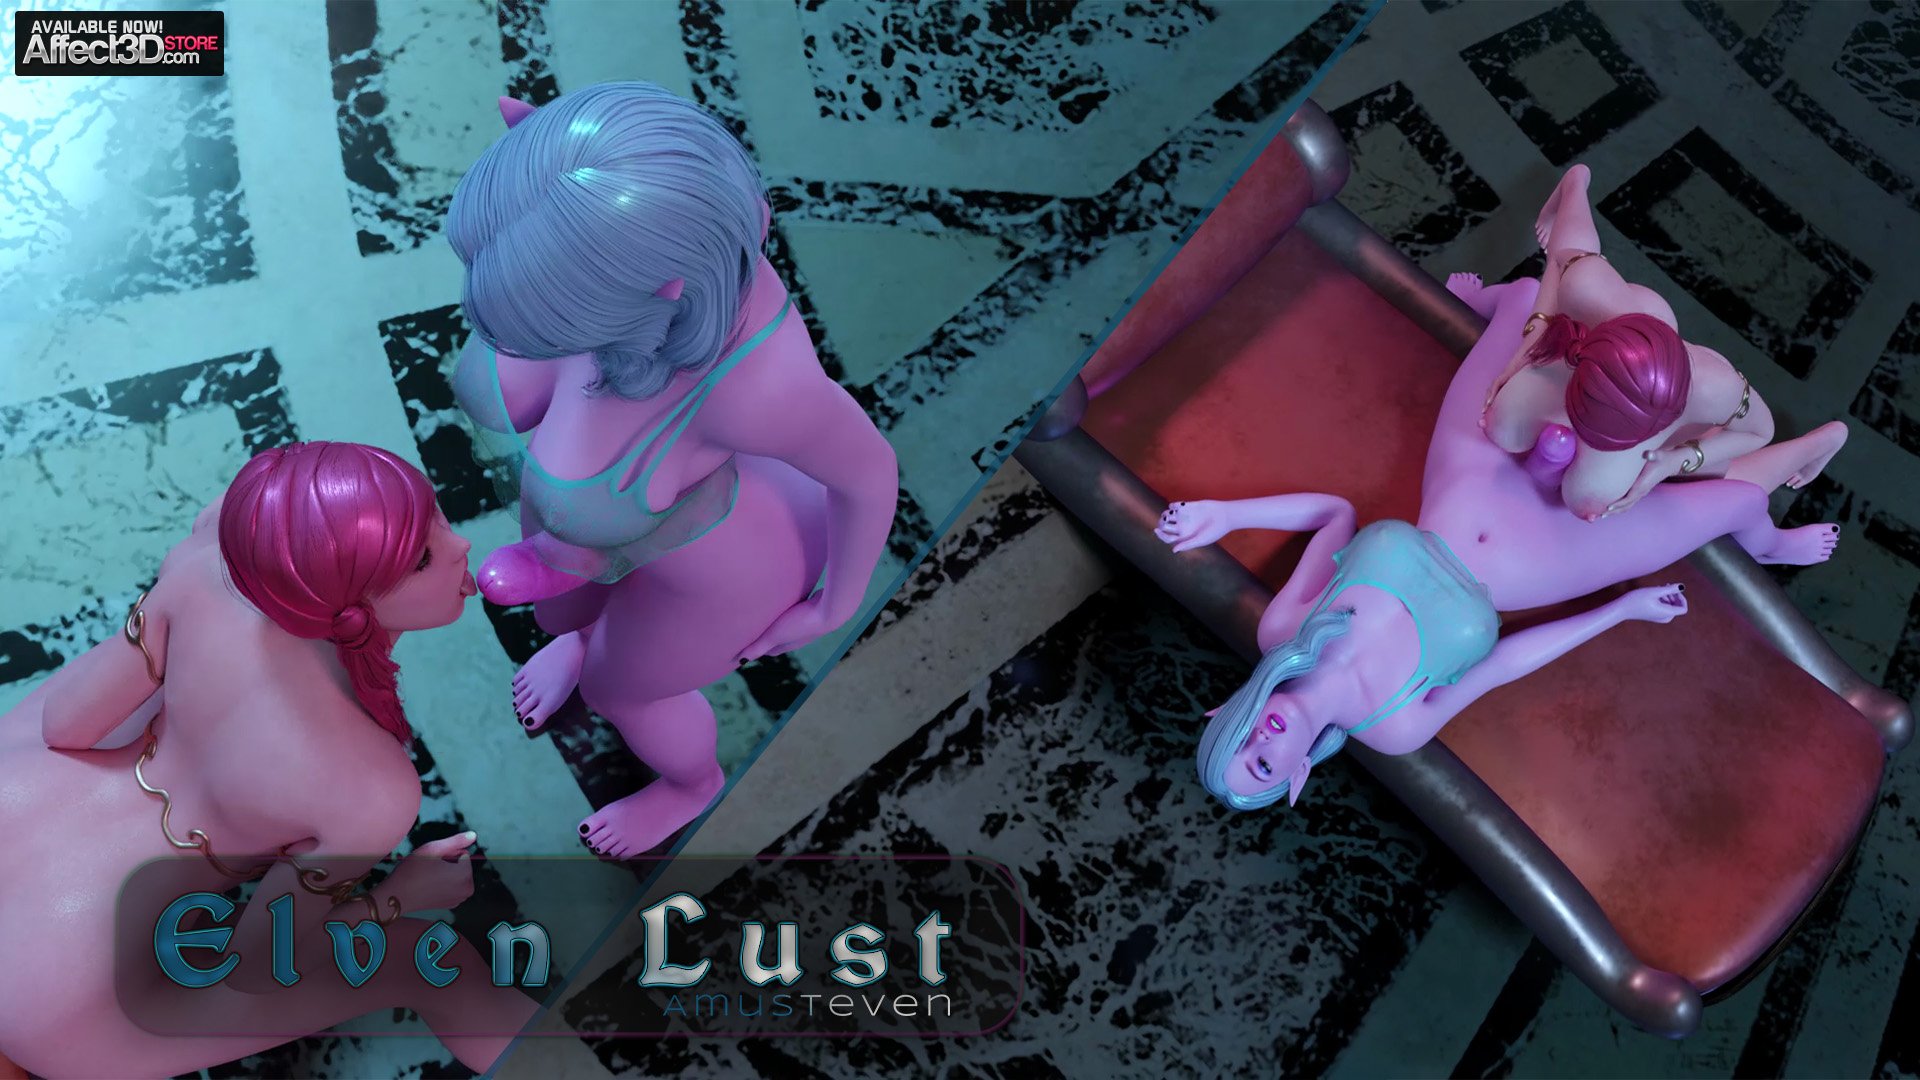 Watch Elven Lust! Futanari Animation from Amusteven!